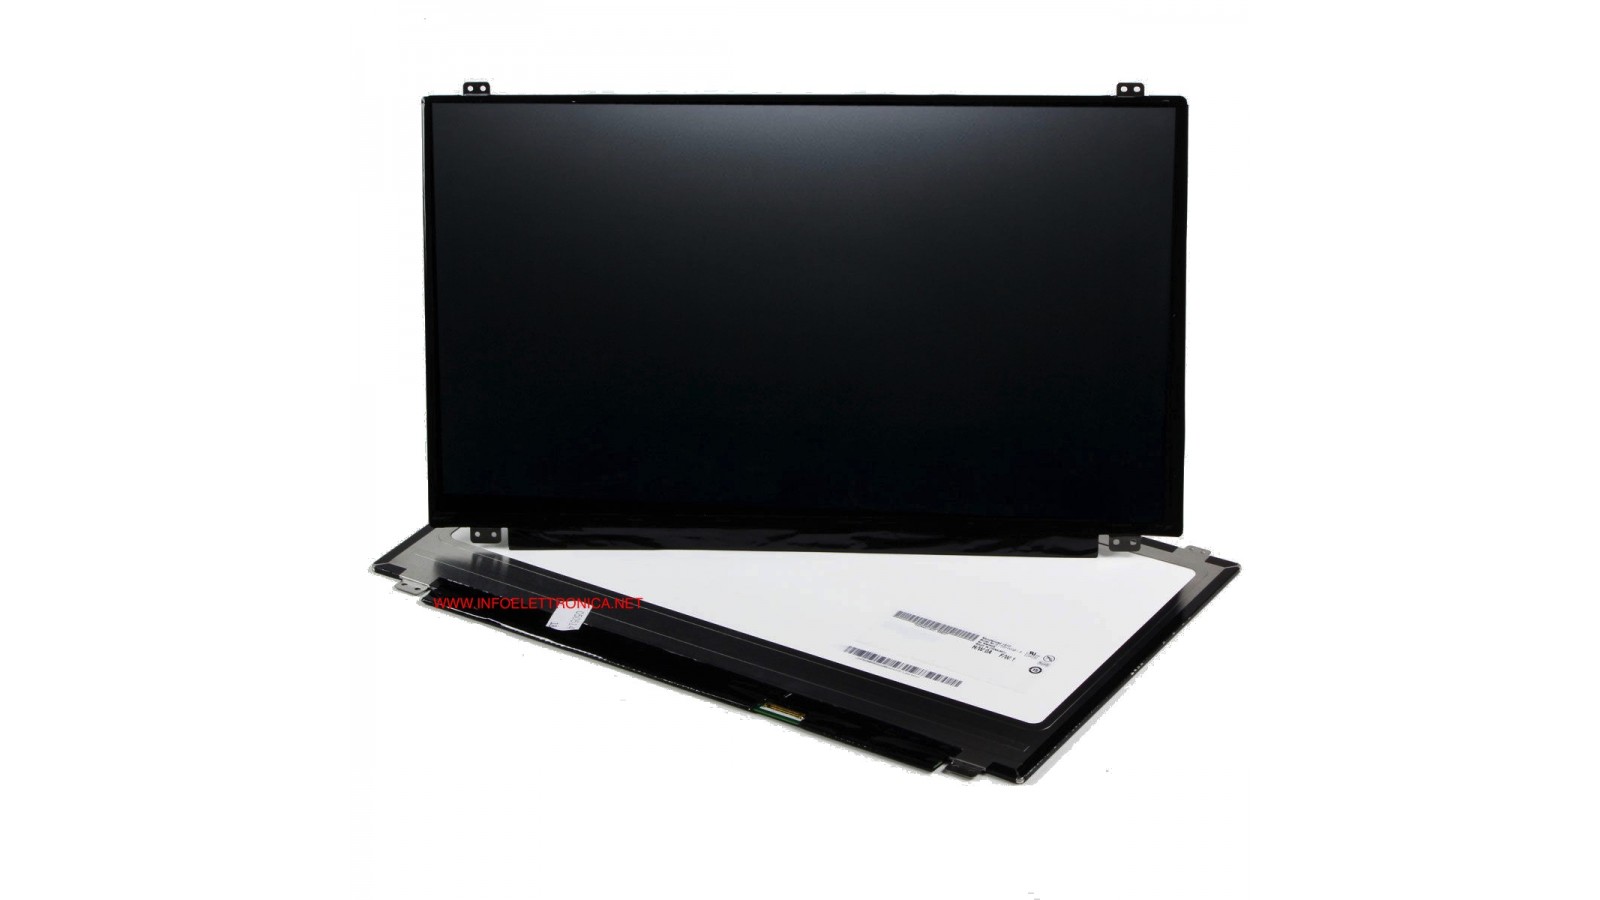 Display LCD Schermo 15,6 Led compatibile con B156HTN03.7 Full Hd